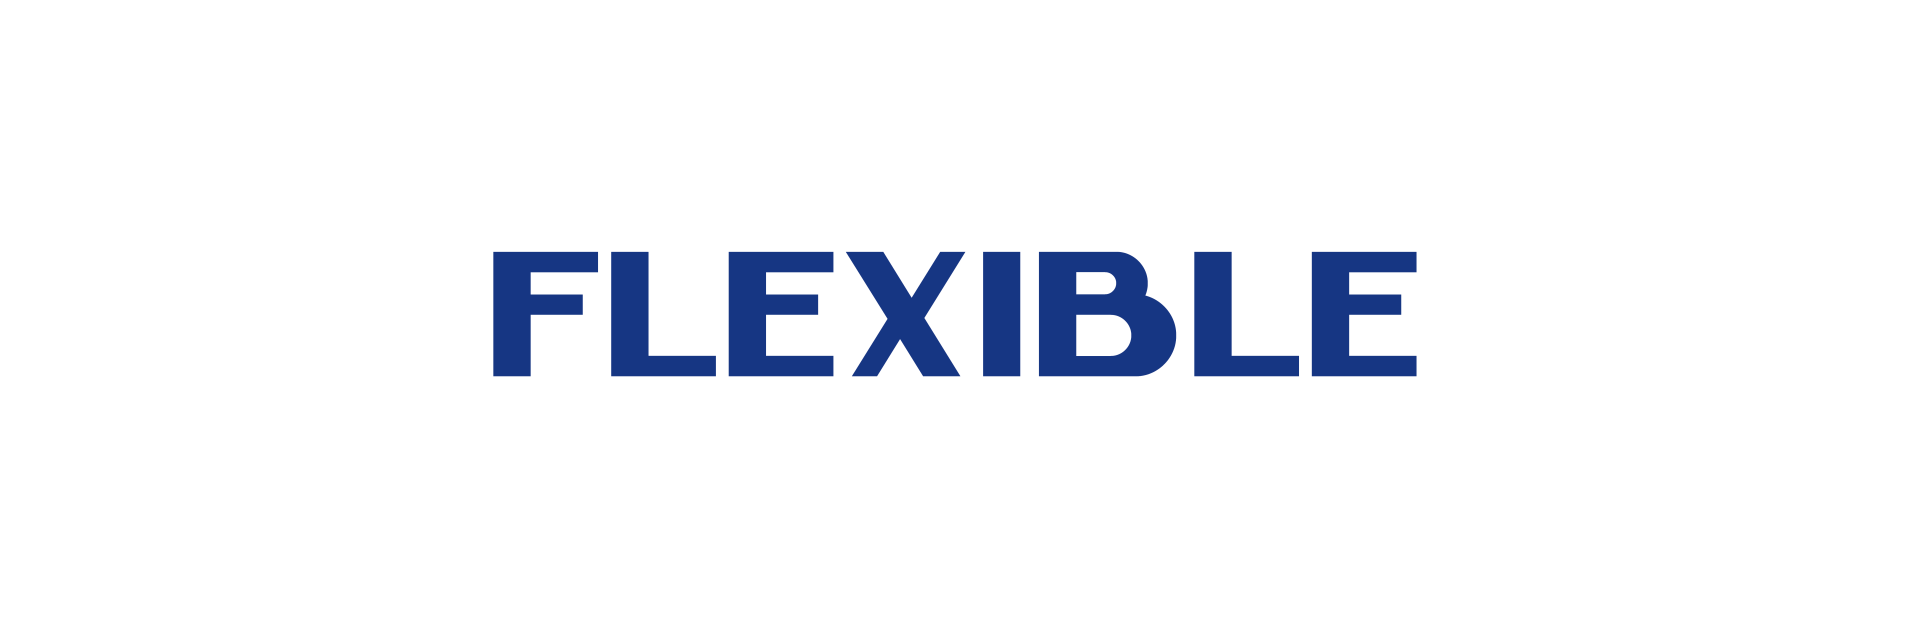 Flexible Text